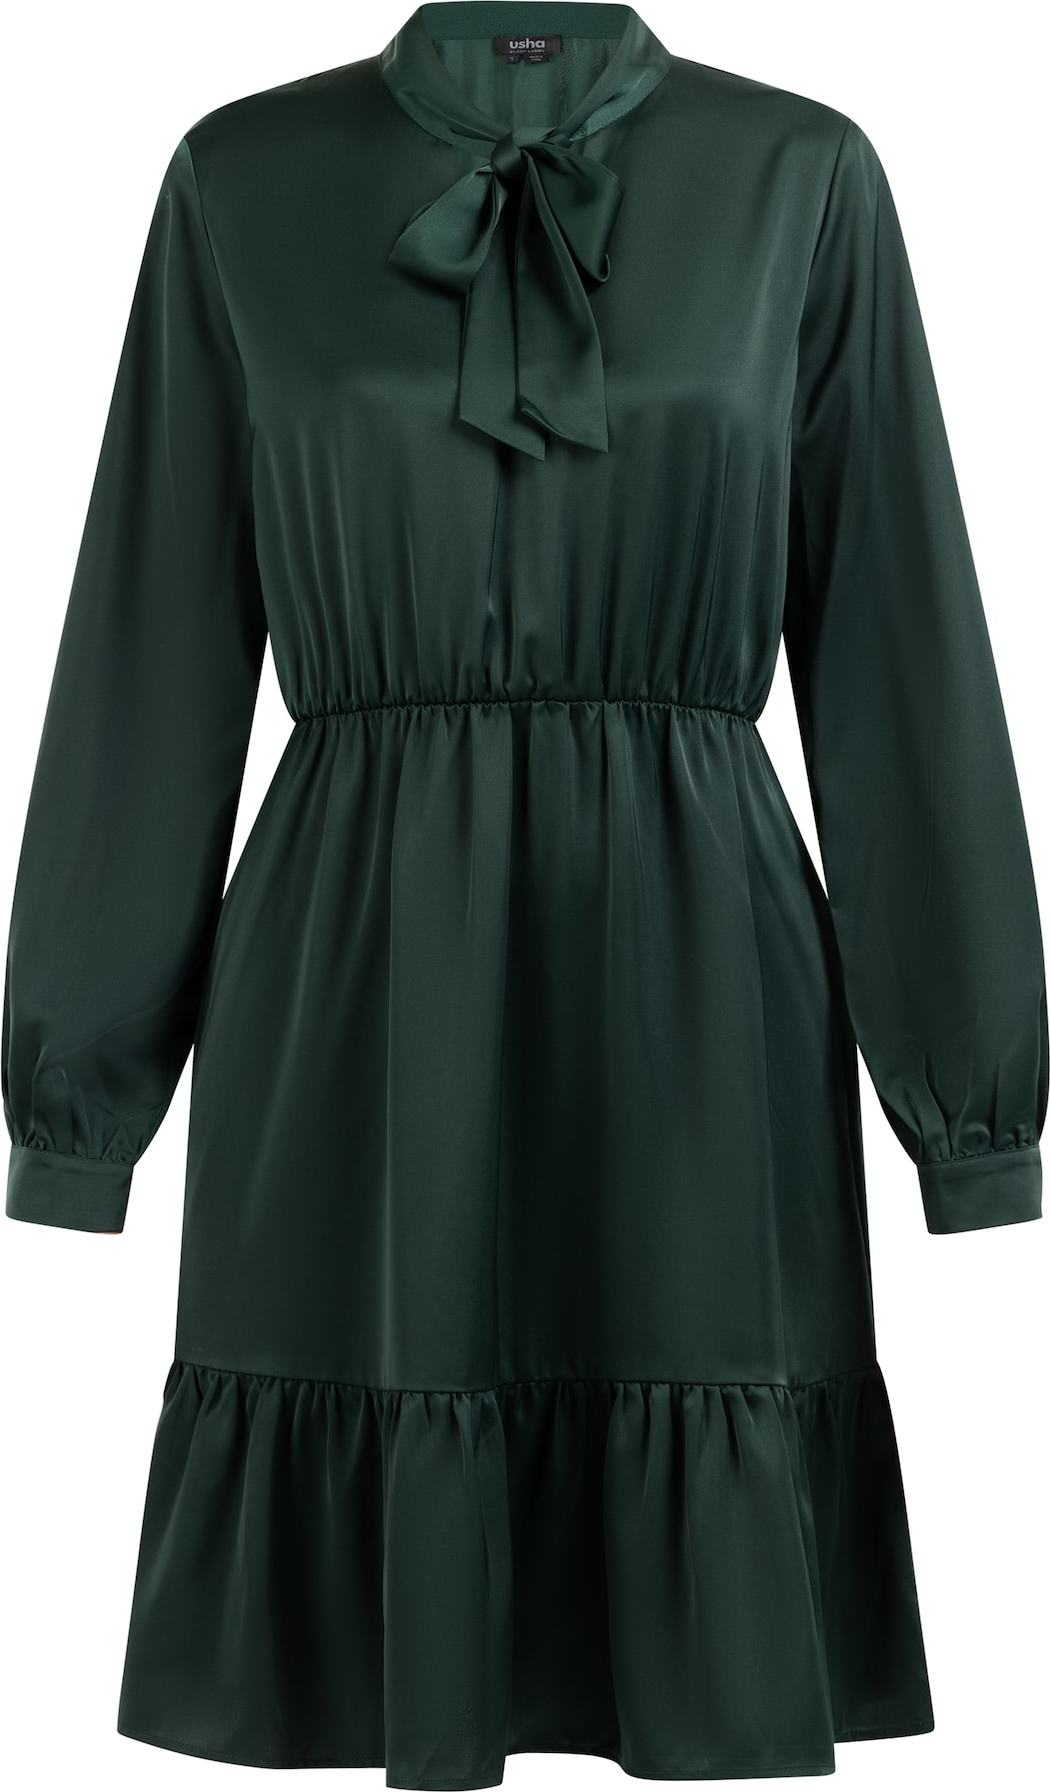 usha BLACK LABEL Košilové šaty tmavě zelená